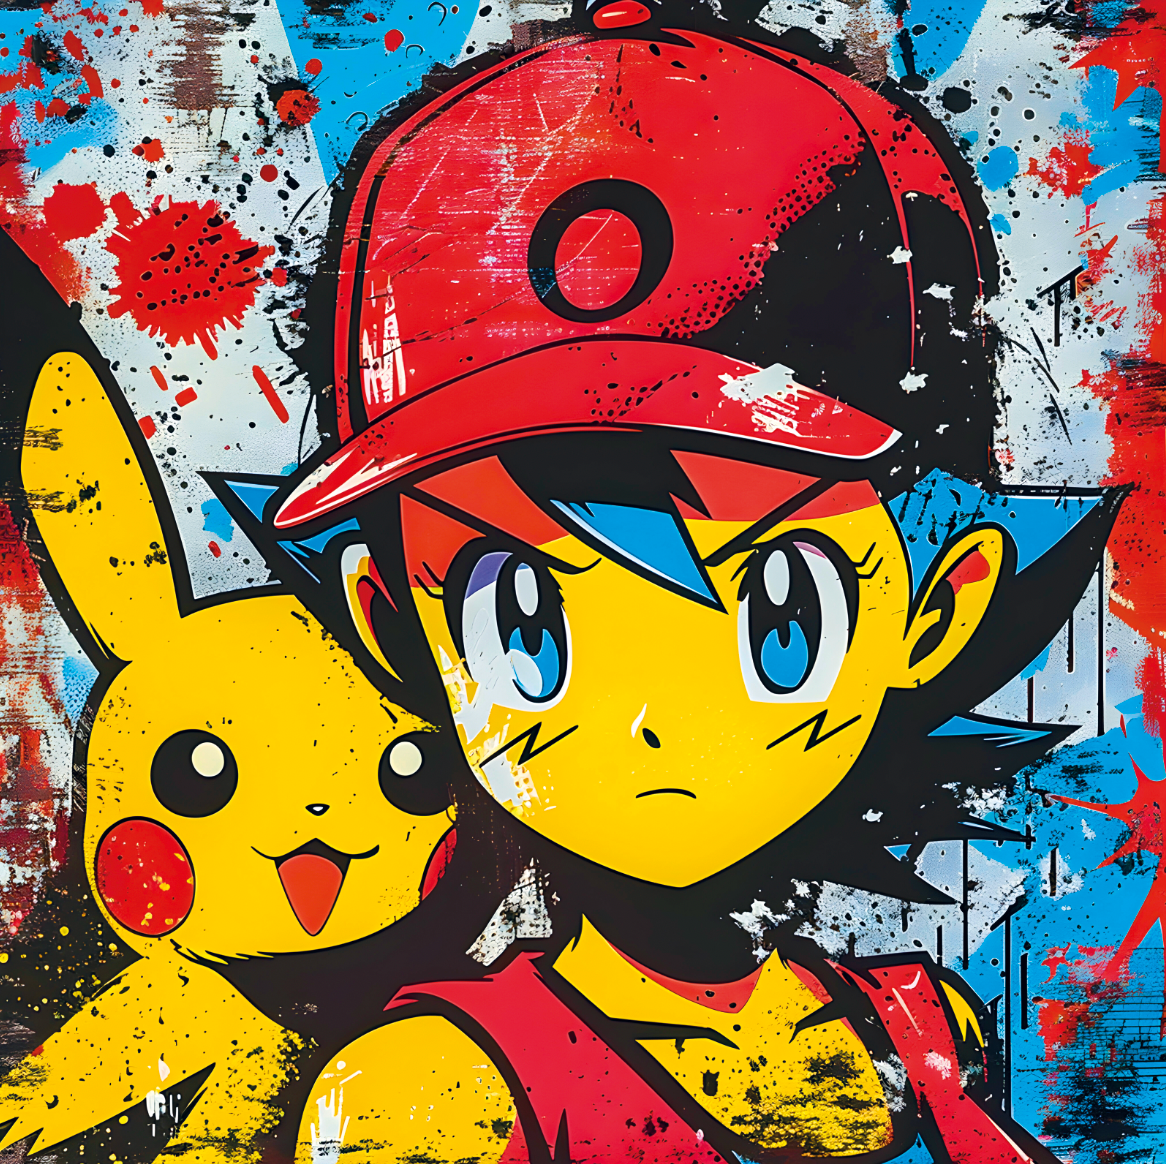 Tableau Coloré de Sacha et Pikachu - Cadre Déco Inspirant pour Chambre d'Enfant - Fabulartz.fr 